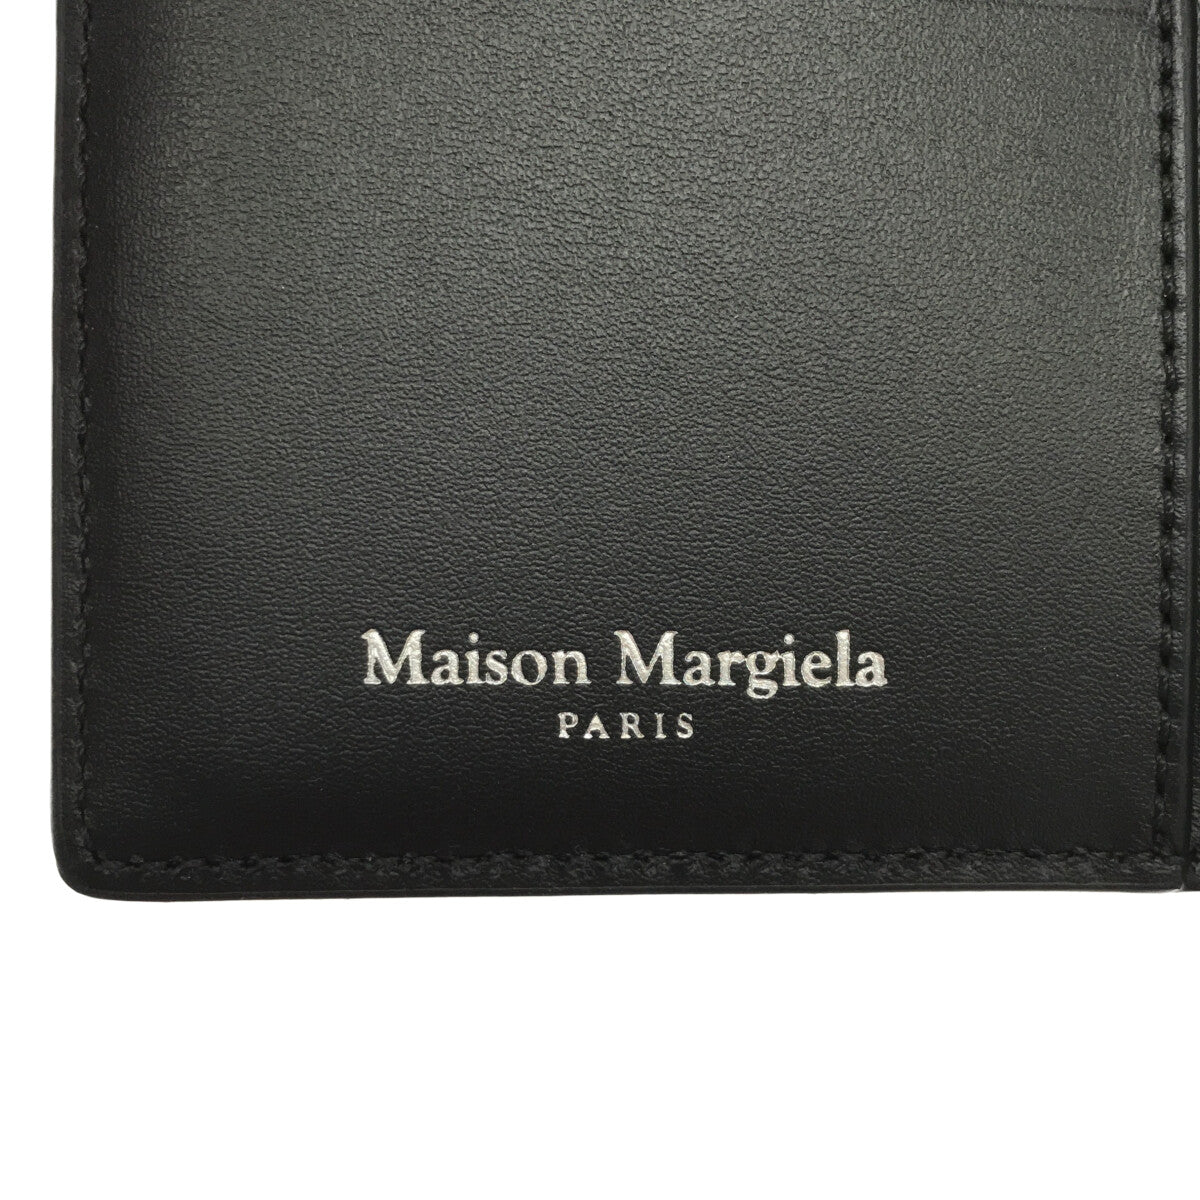 Maison Margiela / メゾンマルジェラ | Card Case Wallet カードケース